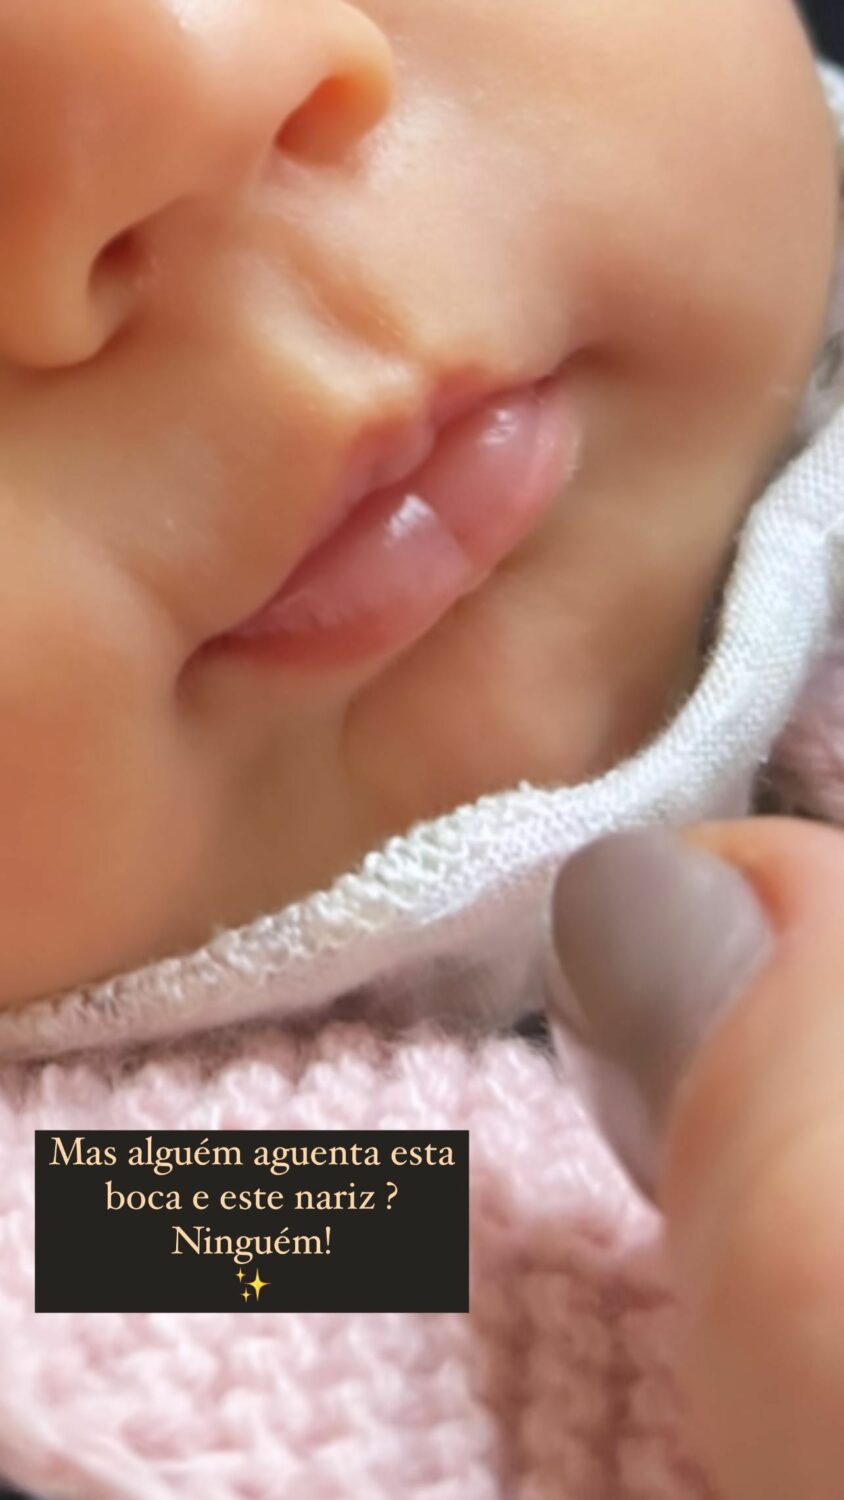 Carolina Pinto revela foto (amorosa) da filha bebé: &#8220;Mas alguém aguenta esta boca e este nariz?&#8221;